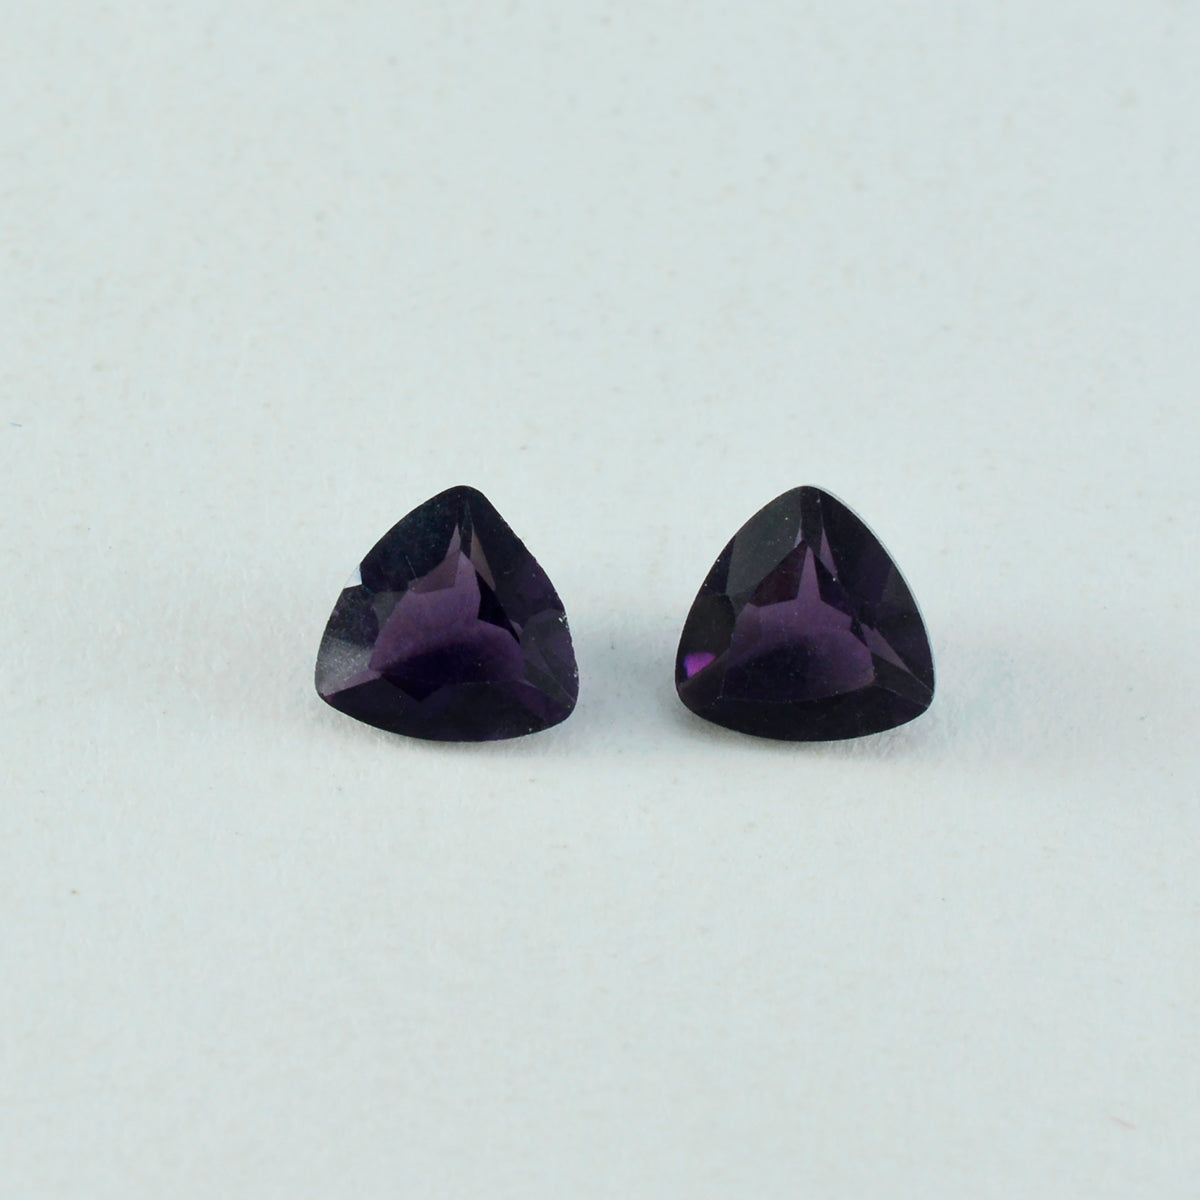 Riyogems 1 Stück violetter Amethyst mit CZ, facettiert, 13 x 13 mm, Billionenform, schöner, hochwertiger loser Edelstein